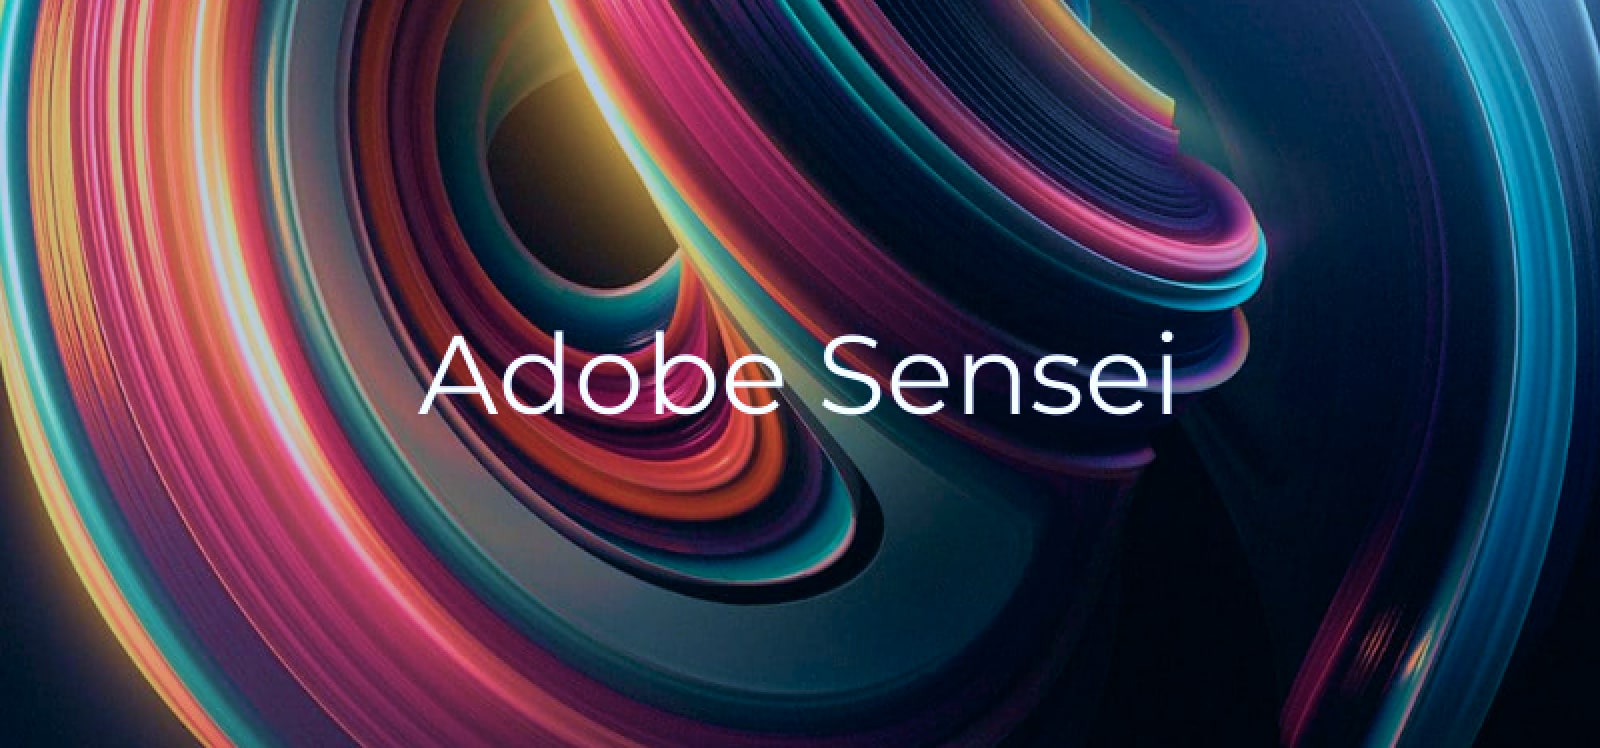 Adobe Sensei